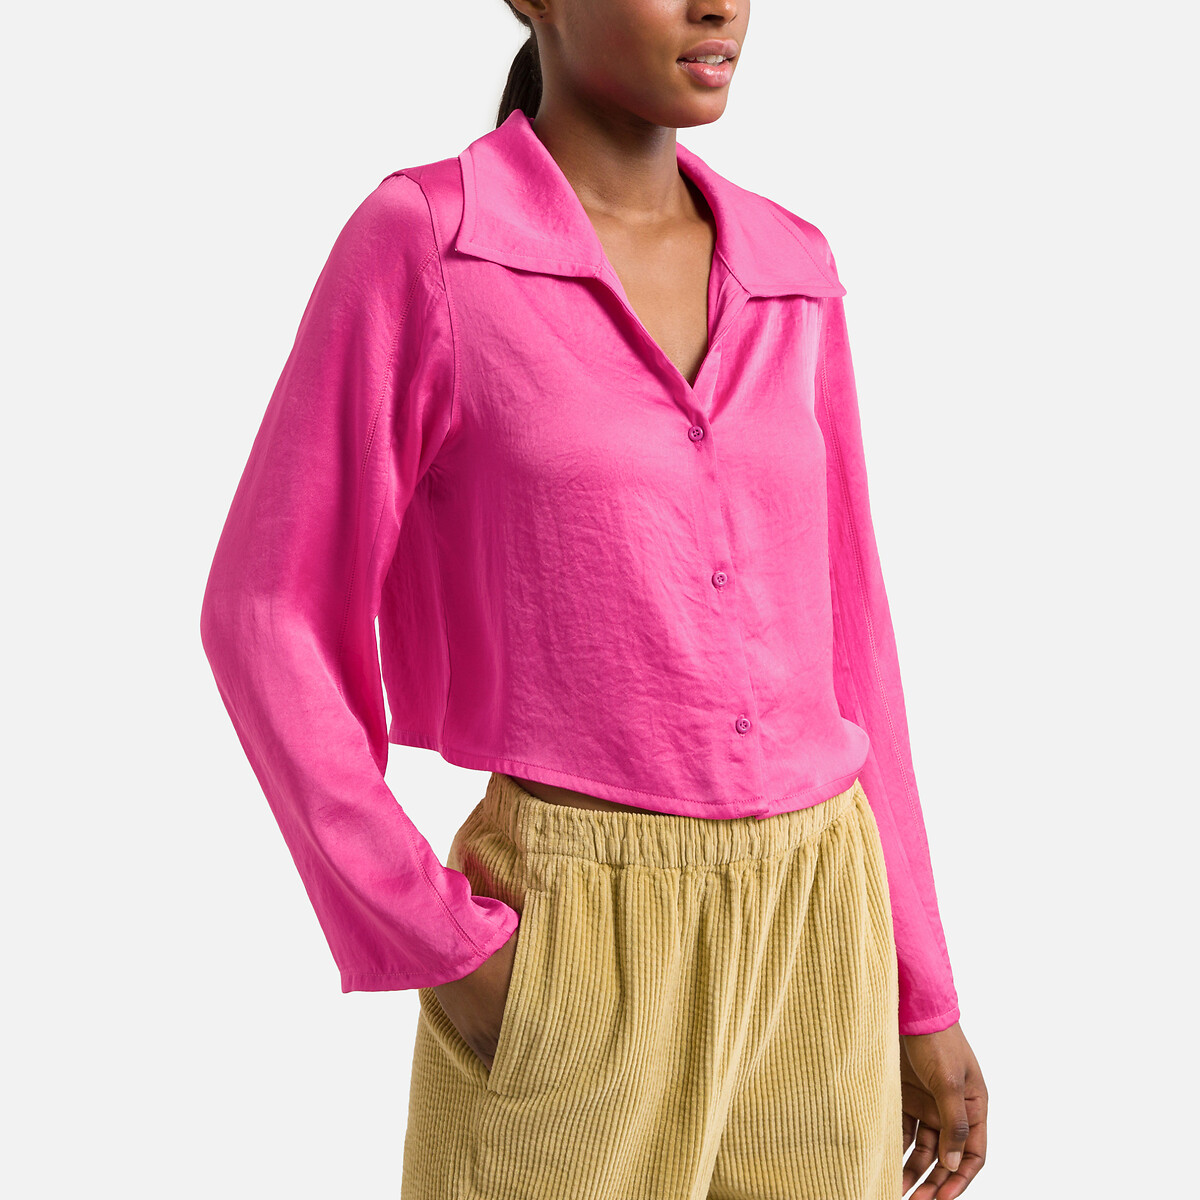 Рубашка укороченная с длинными рукавами L розовый рубашка бархатистая короткая с длинными рукавами widland m l зеленый